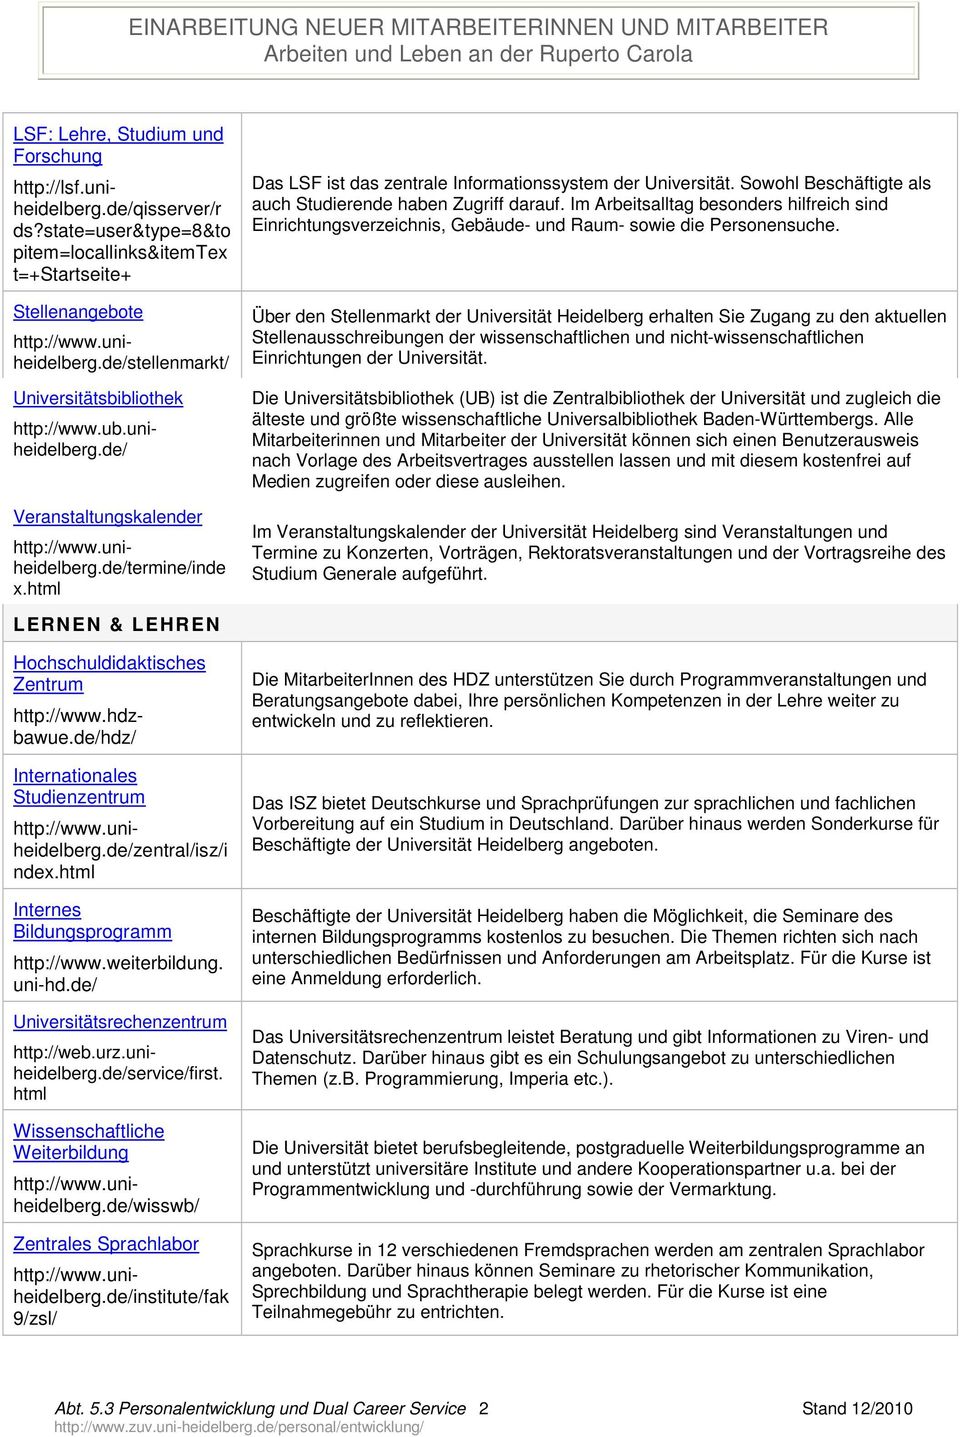 uniheidelberg.de/termine/inde x.html Das LSF ist das zentrale Informationssystem der Universität. Sowohl Beschäftigte als auch Studierende haben Zugriff darauf.